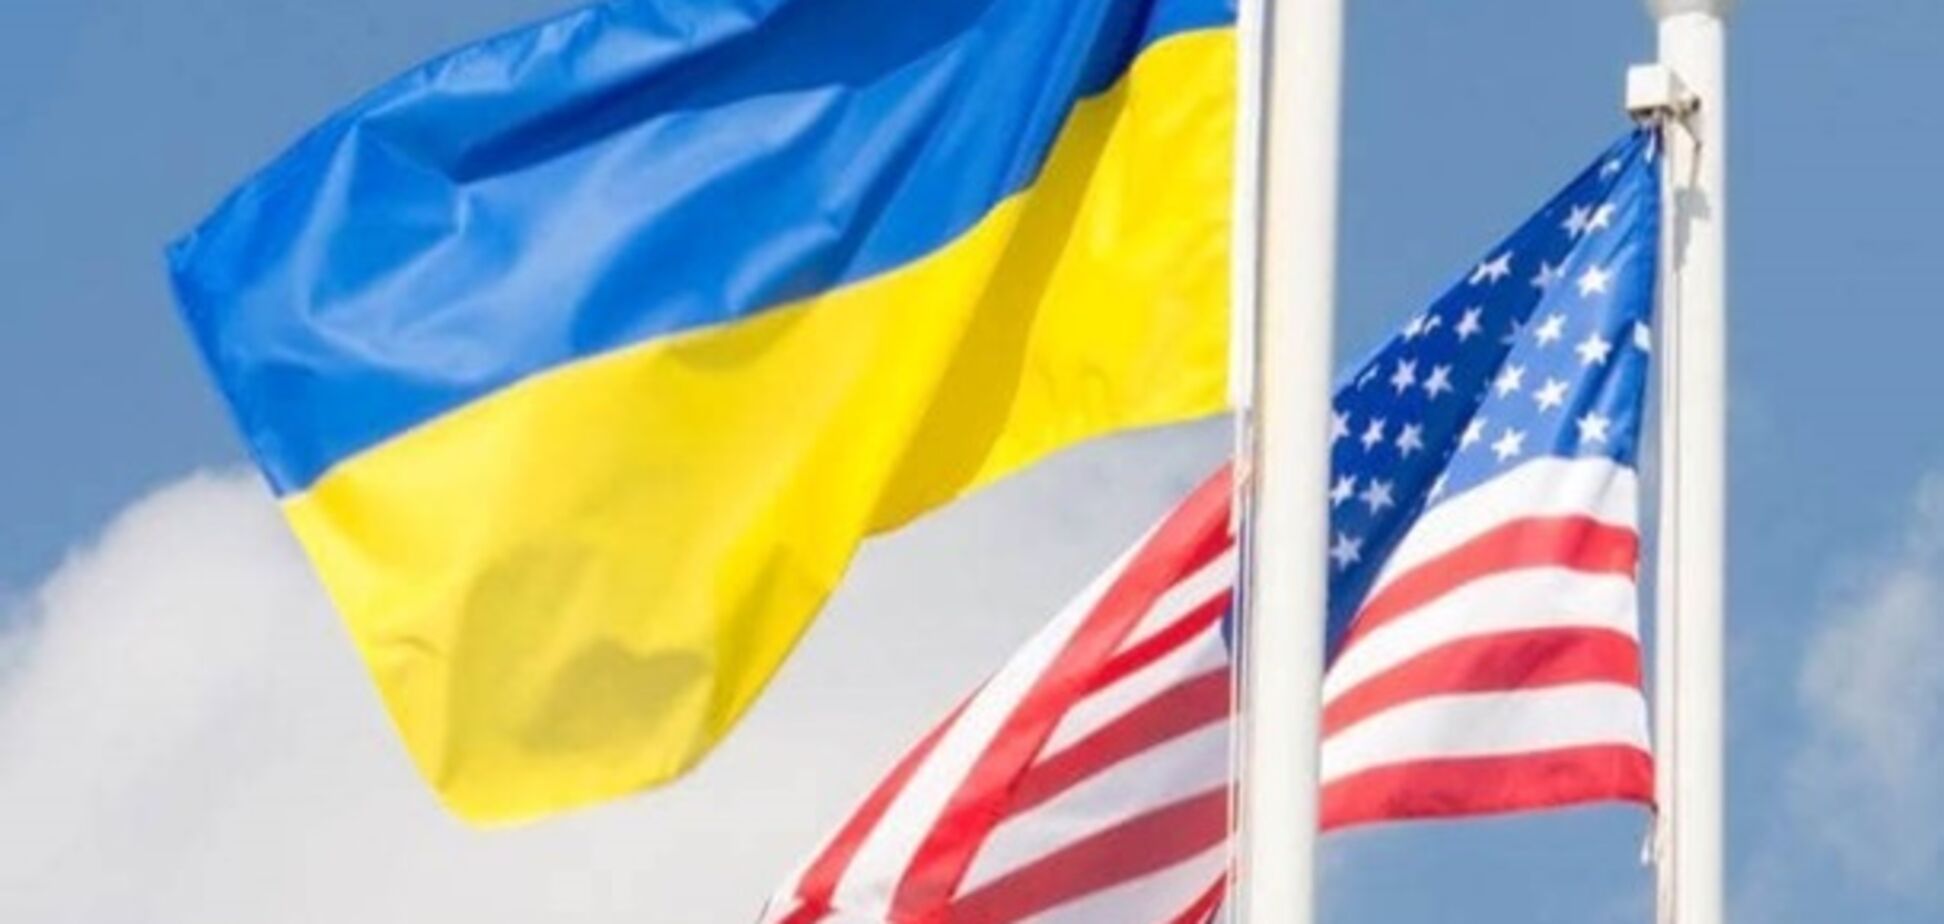 Гриценко: цель украинской дипломатии – союзнические отношения с США и Великобританией